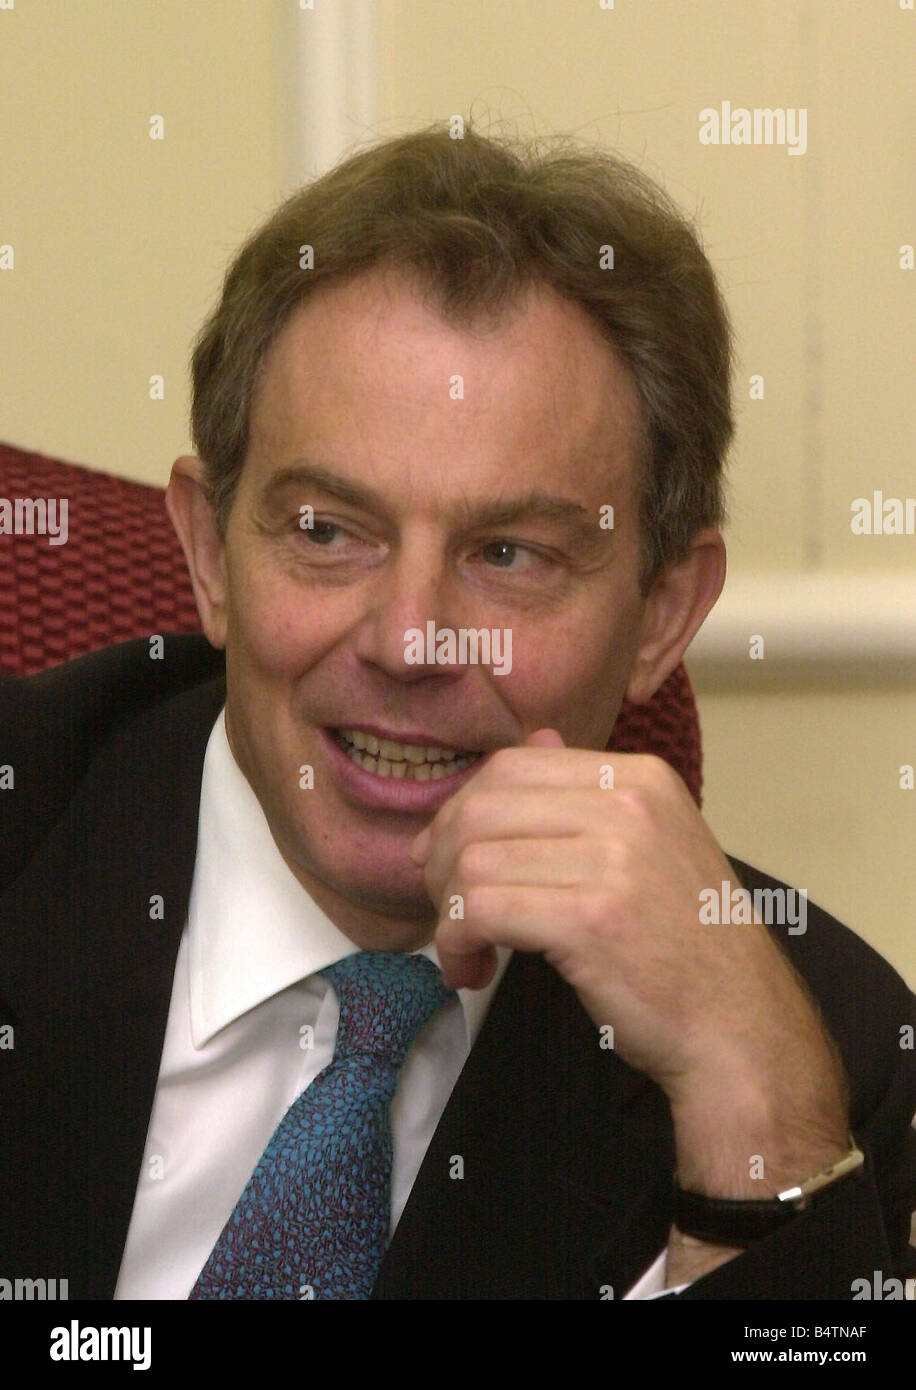 Tony Blair, Premier Ministre d'avril 2002 d'être interviewé par Brian Reade chroniqueur journaliste personnel miroir au numéro 10 Downing Street le Daily Mirror, BRIAN READE AFFRONTE LE PREMIER MINISTRE À LA QUESTION SUR LE SONDAGE CHOC QUI DIT QUE LES CHOSES NE FONT QUE S'AGGRAVER SOUS SA DIRECTION Mirrorpix Banque D'Images